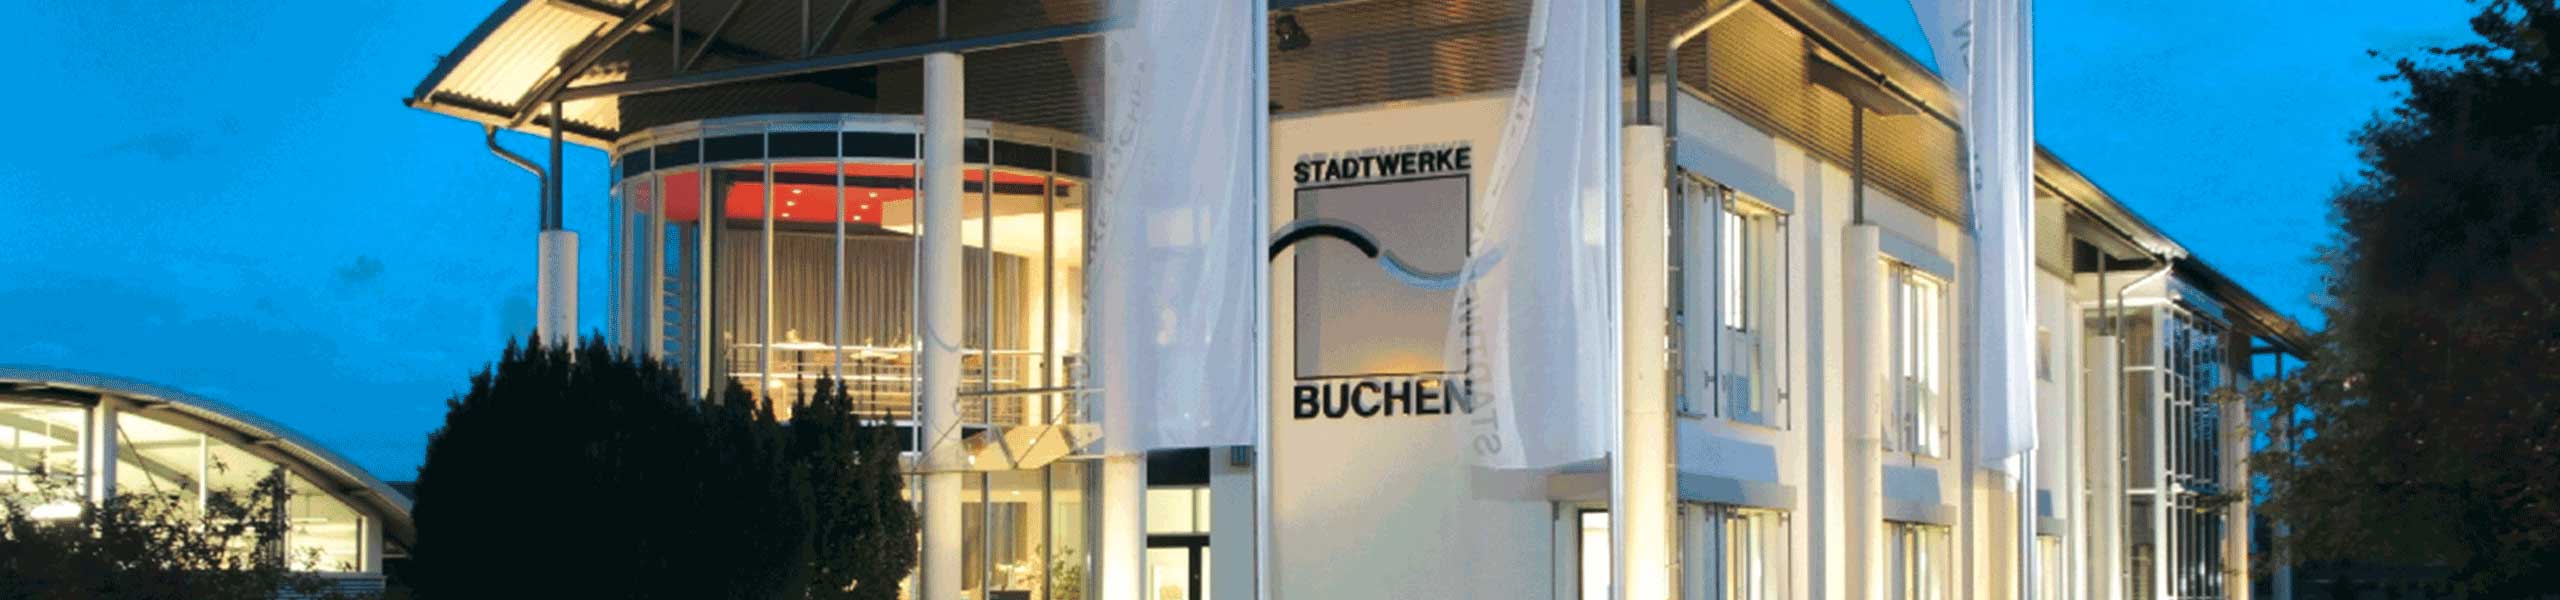 Stadtwerke Buchen GmbH & Co KG - Ihr Versorger vor Ort - Grundzuständiger Messstellenbetreiber Gas